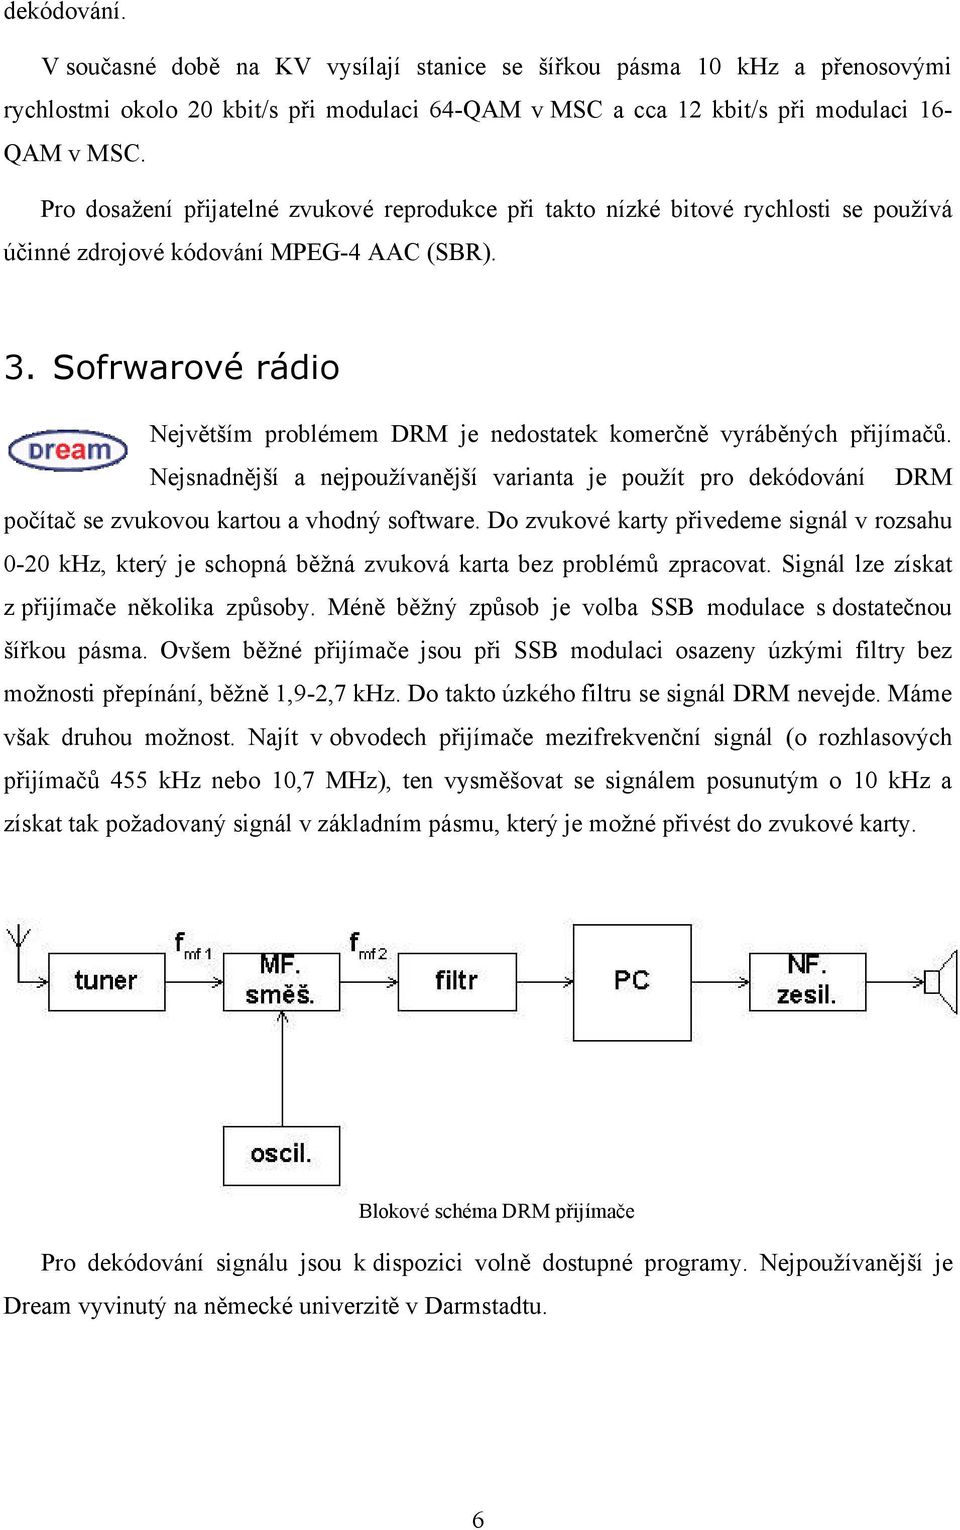 Sofrwarové rádio Největším problémem DRM je nedostatek komerčně vyráběných přijímačů. Nejsnadnější a nejpoužívanější varianta je použít pro dekódování DRM počítač se zvukovou kartou a vhodný software.